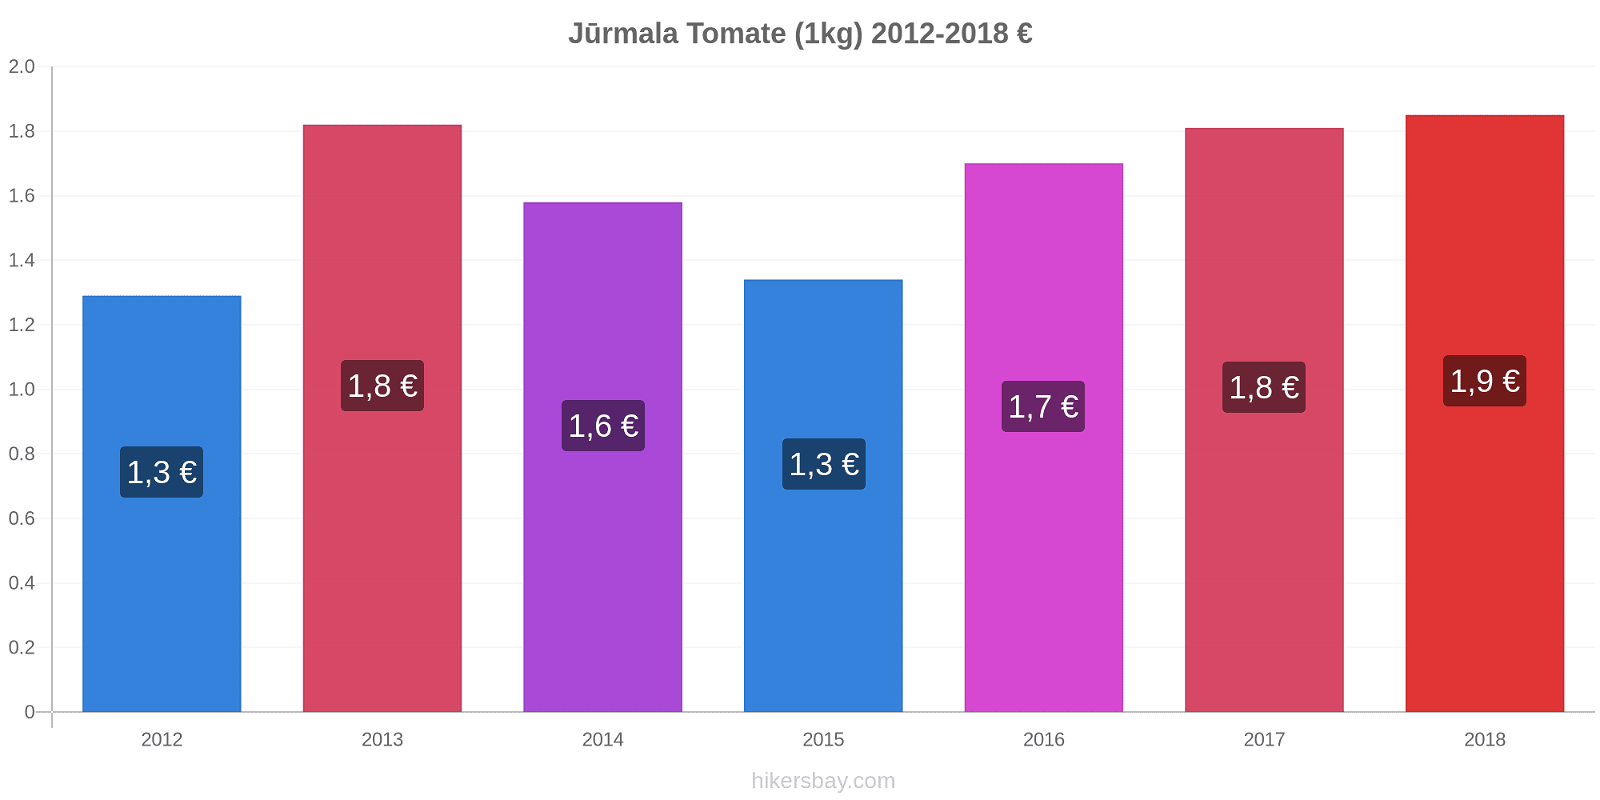 Jūrmala cambios de precios Tomate (1kg) hikersbay.com